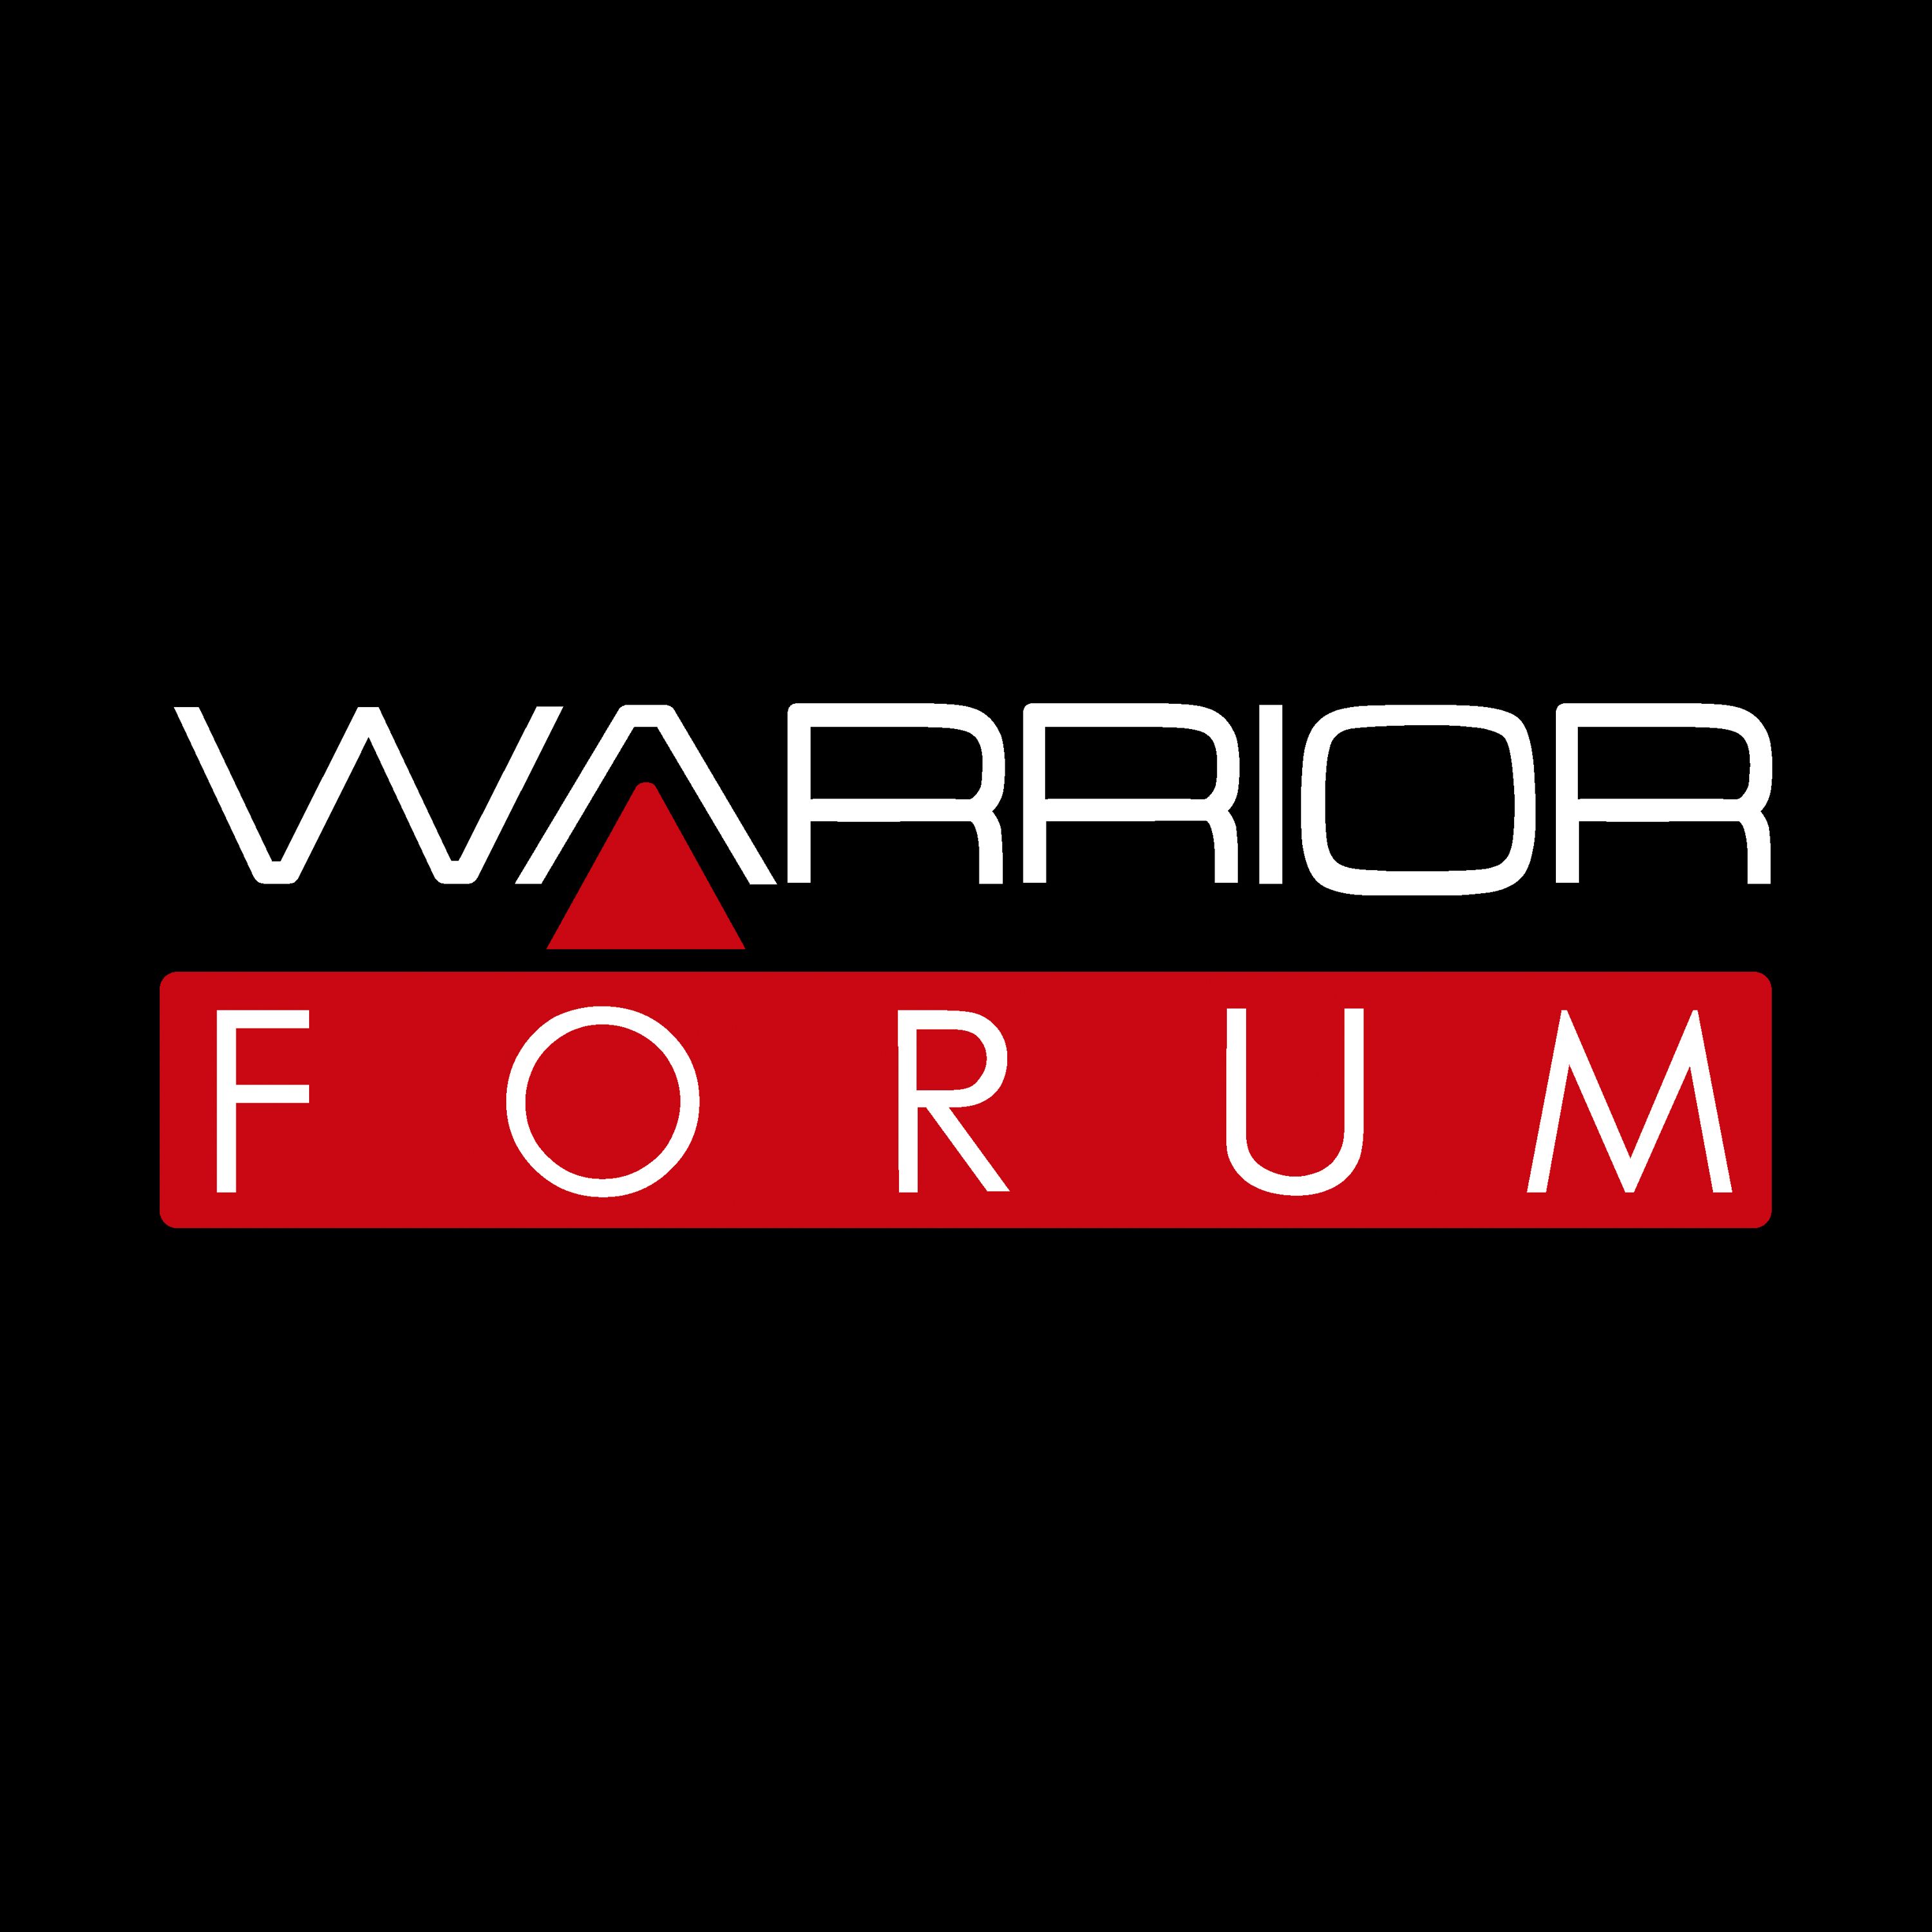 Warrior Forum: The Best of Internet Marketing from WarriorForum.com